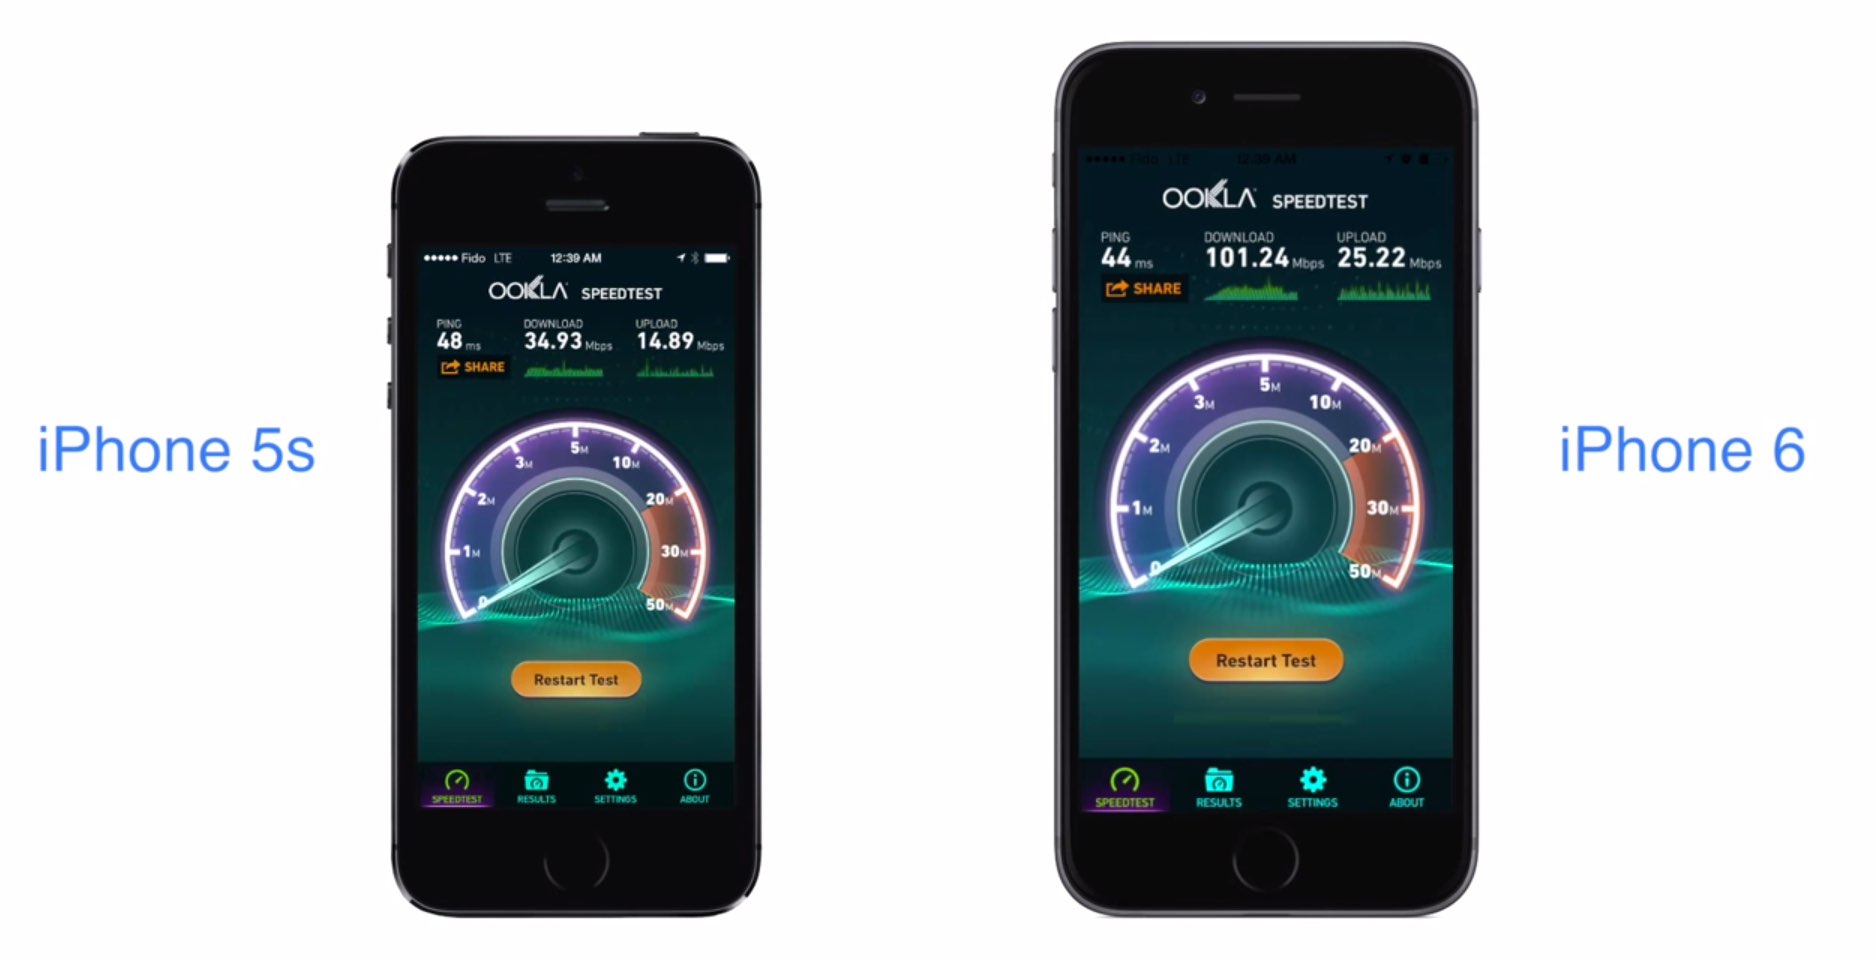 iPhone 6 LTE Speedtest: iPhone 6 deutlich schneller als iPhone 5s 5